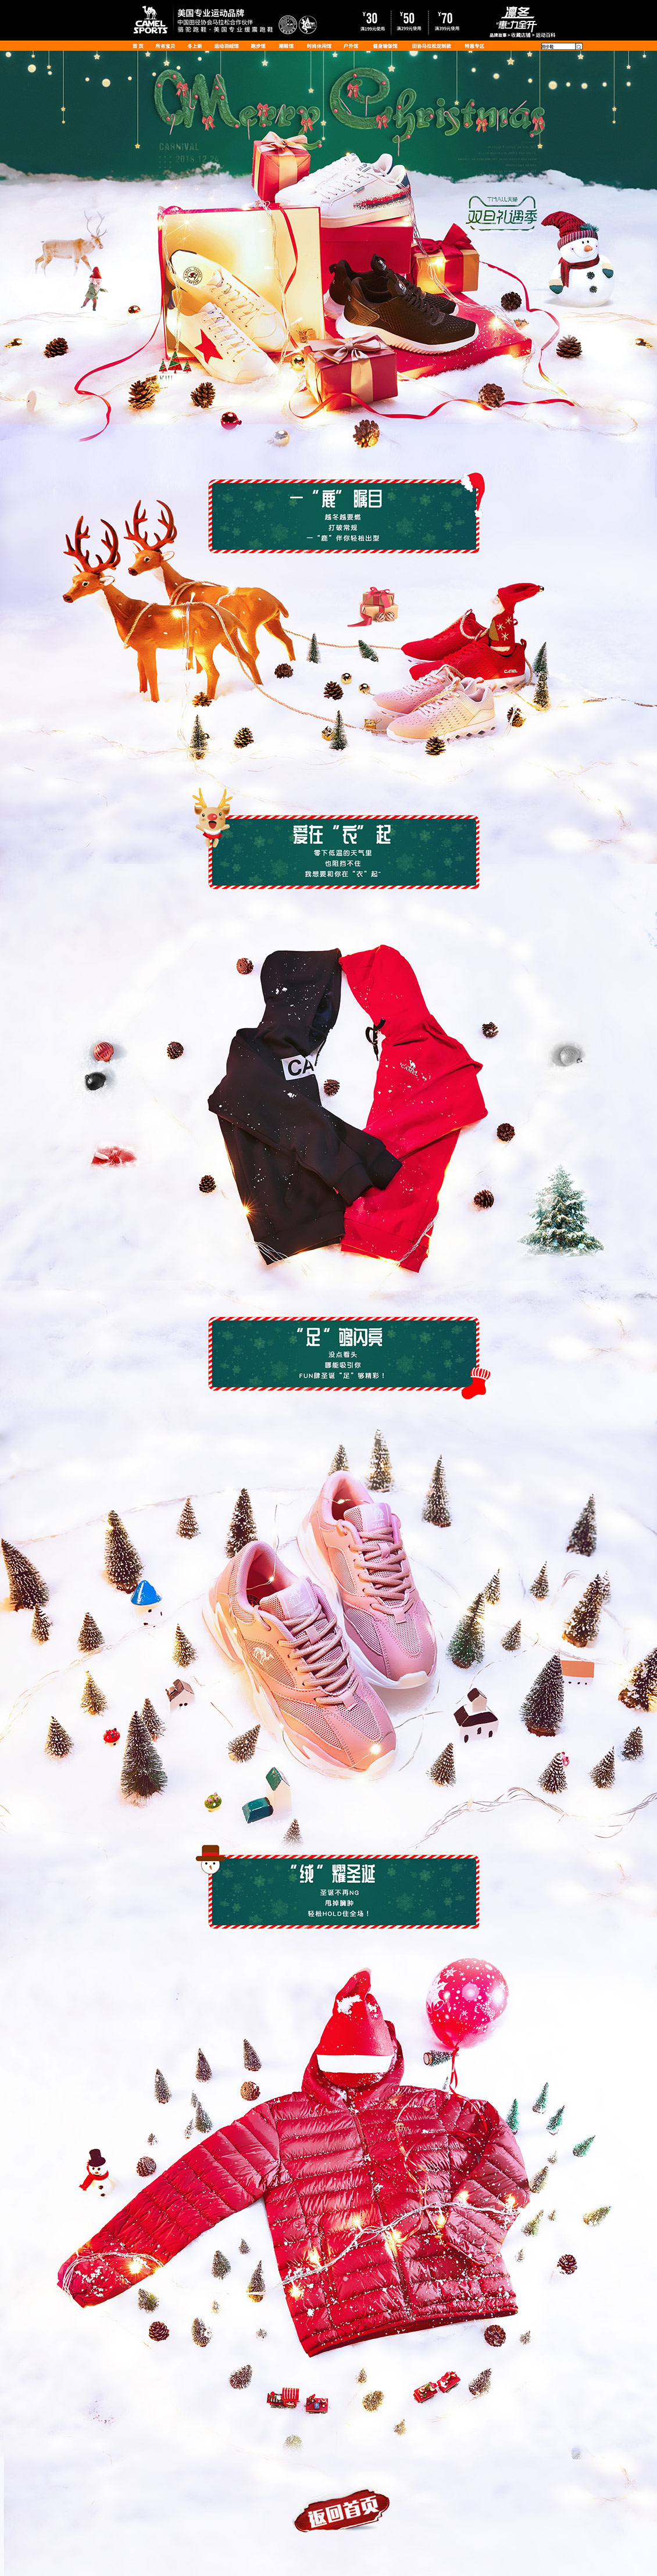 骆驼牌活动 女鞋 鞋子 圣诞节 双旦礼遇季 天猫首页页面设计